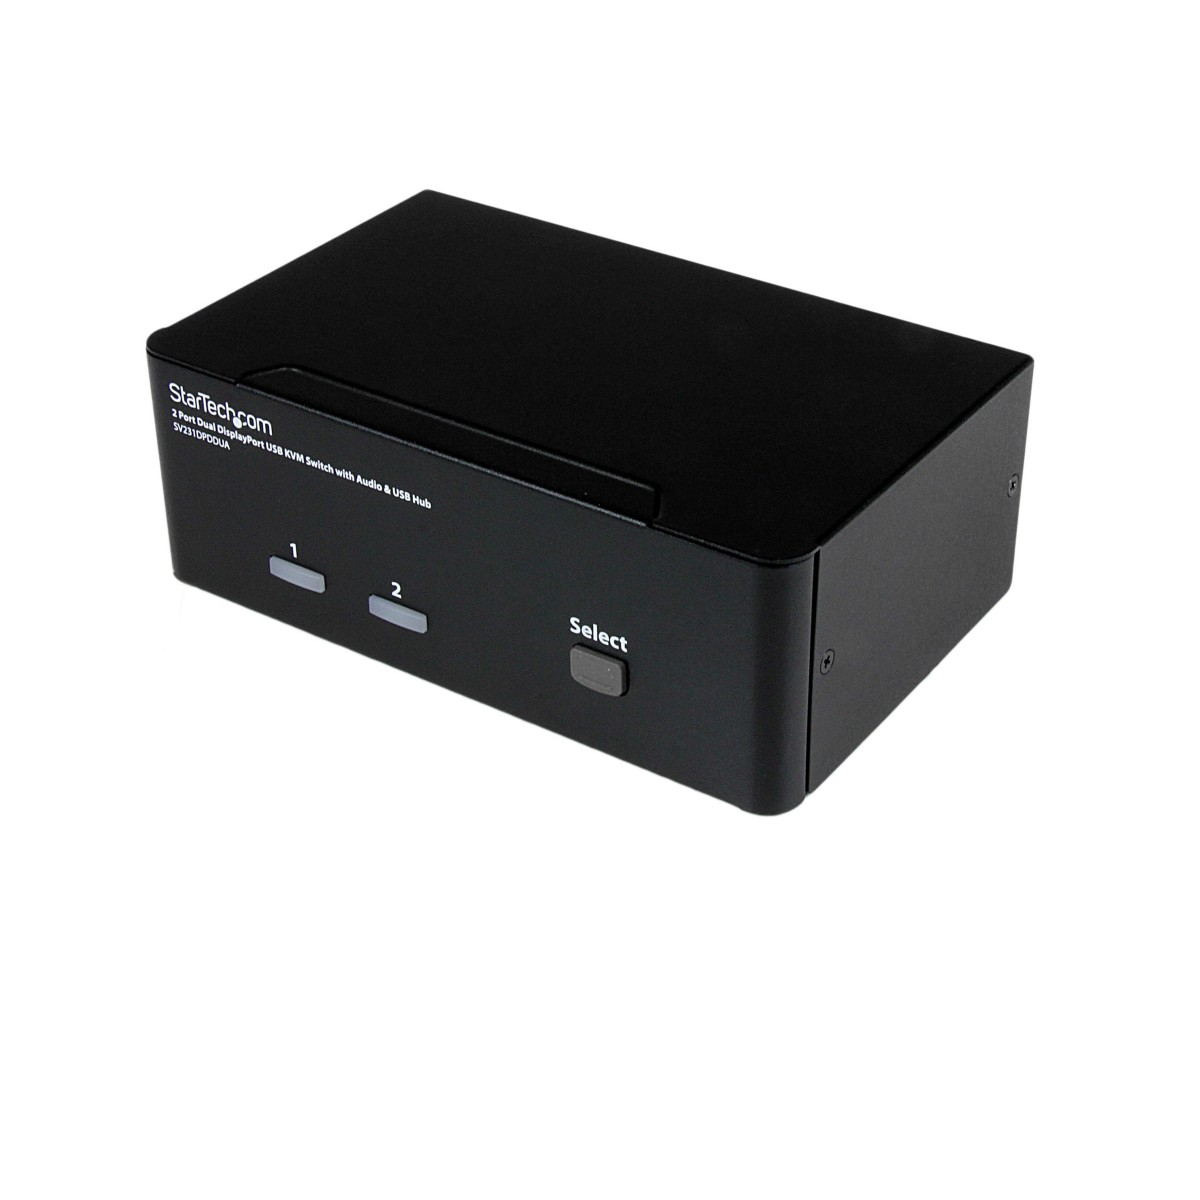 StarTech.com 2 Port Dual DisplayPort USB KVM Switch with Audio  USB 2.0 Hub - 3840 x 2400 pixels - 4K Ultra HD - 18 W - Black